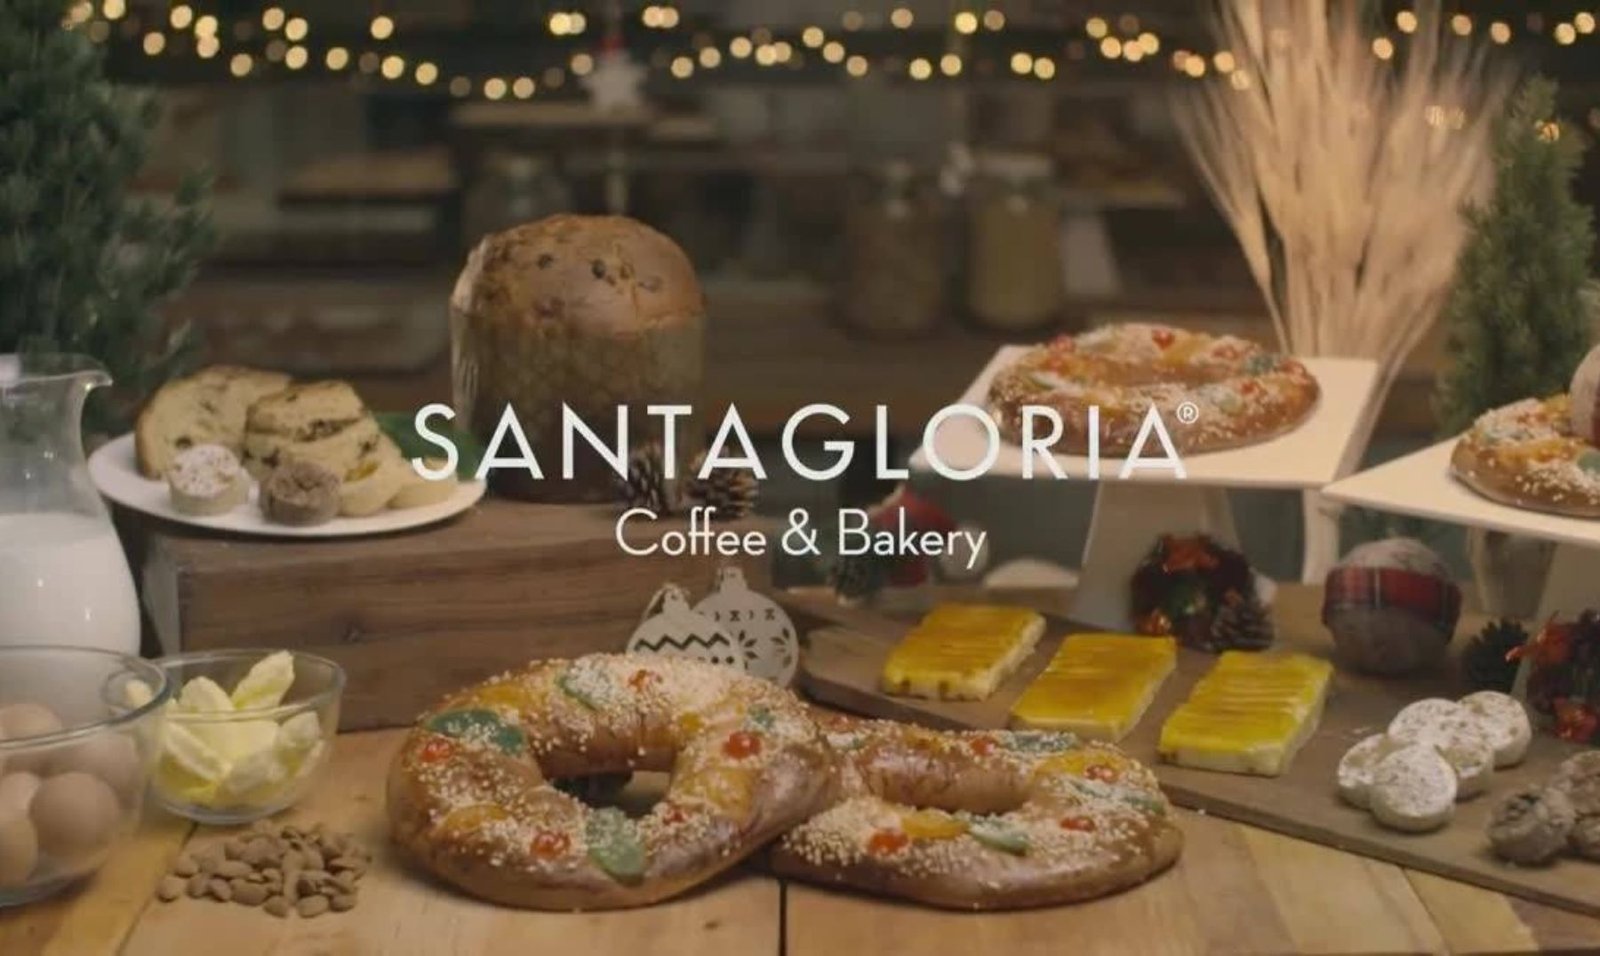 Franquicia Santagloria | Amor por el pan y un negocio exitoso